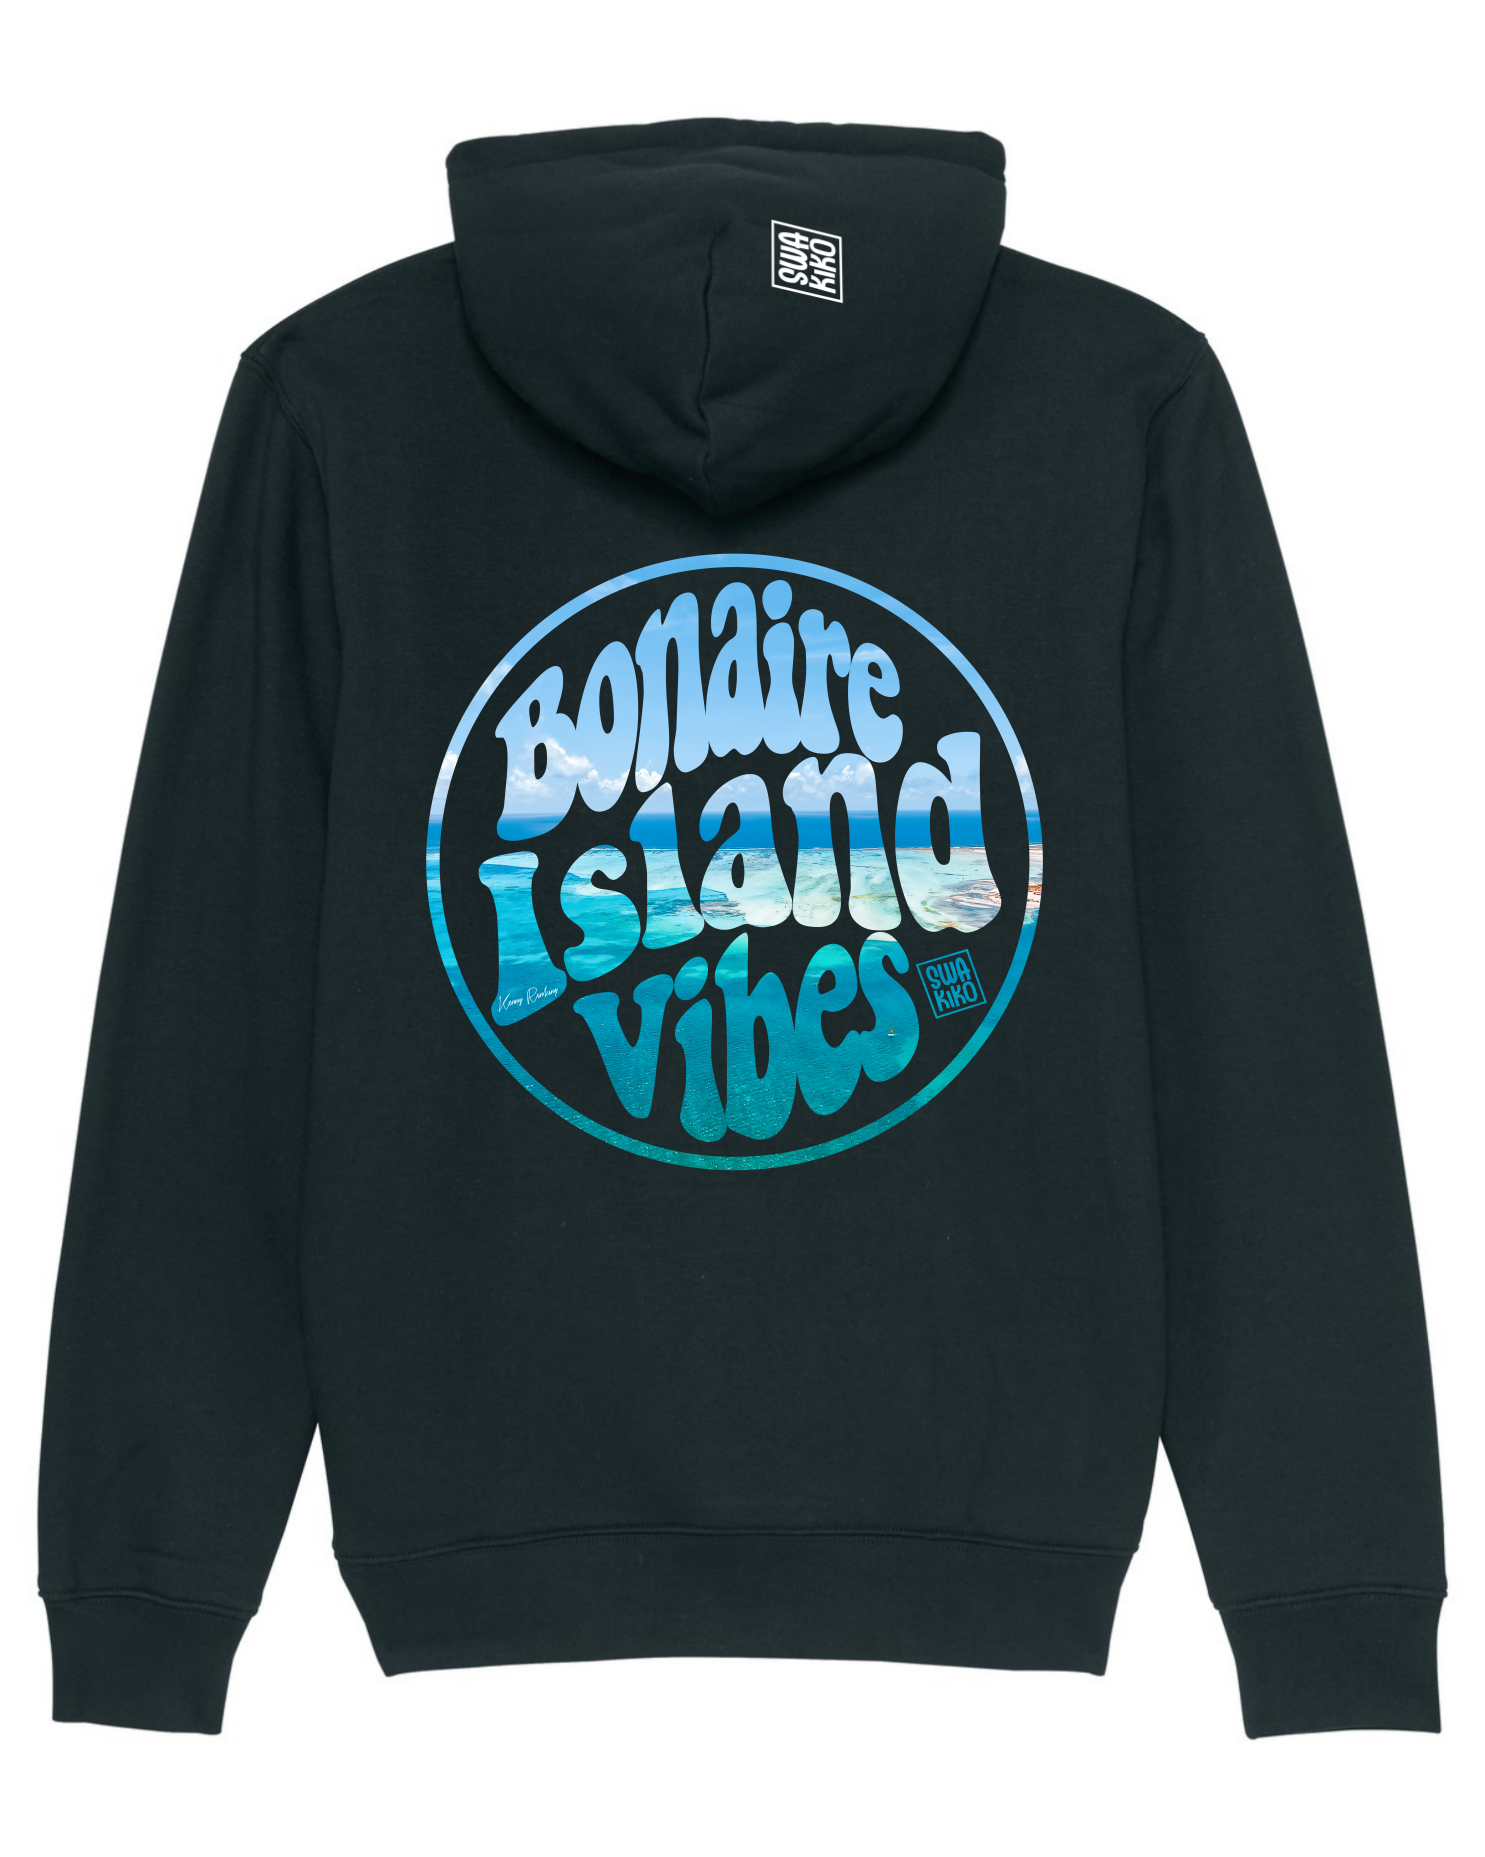 Zwarte Bonaire Island Vibes hoodie - met schitterend droneshot van het eiland. Ontdek het paradijselijke gevoel!